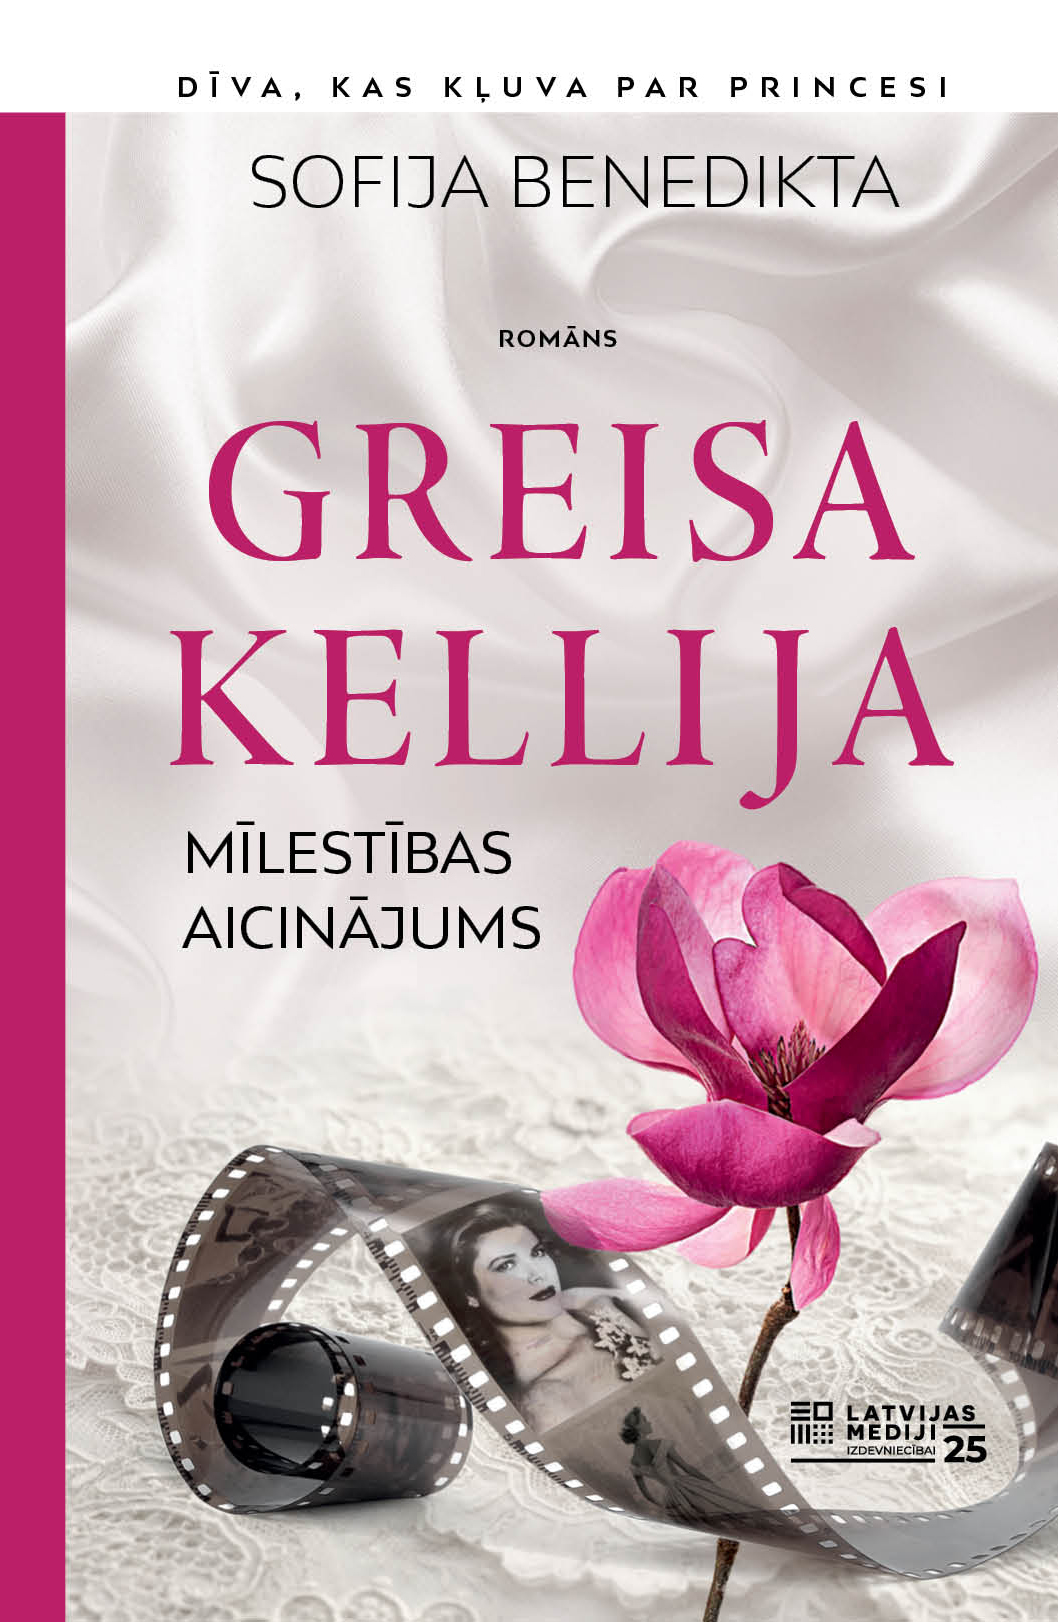 Sofijas Benediktas romāns "Greisa Kellija. Mīlestība aicinājums".